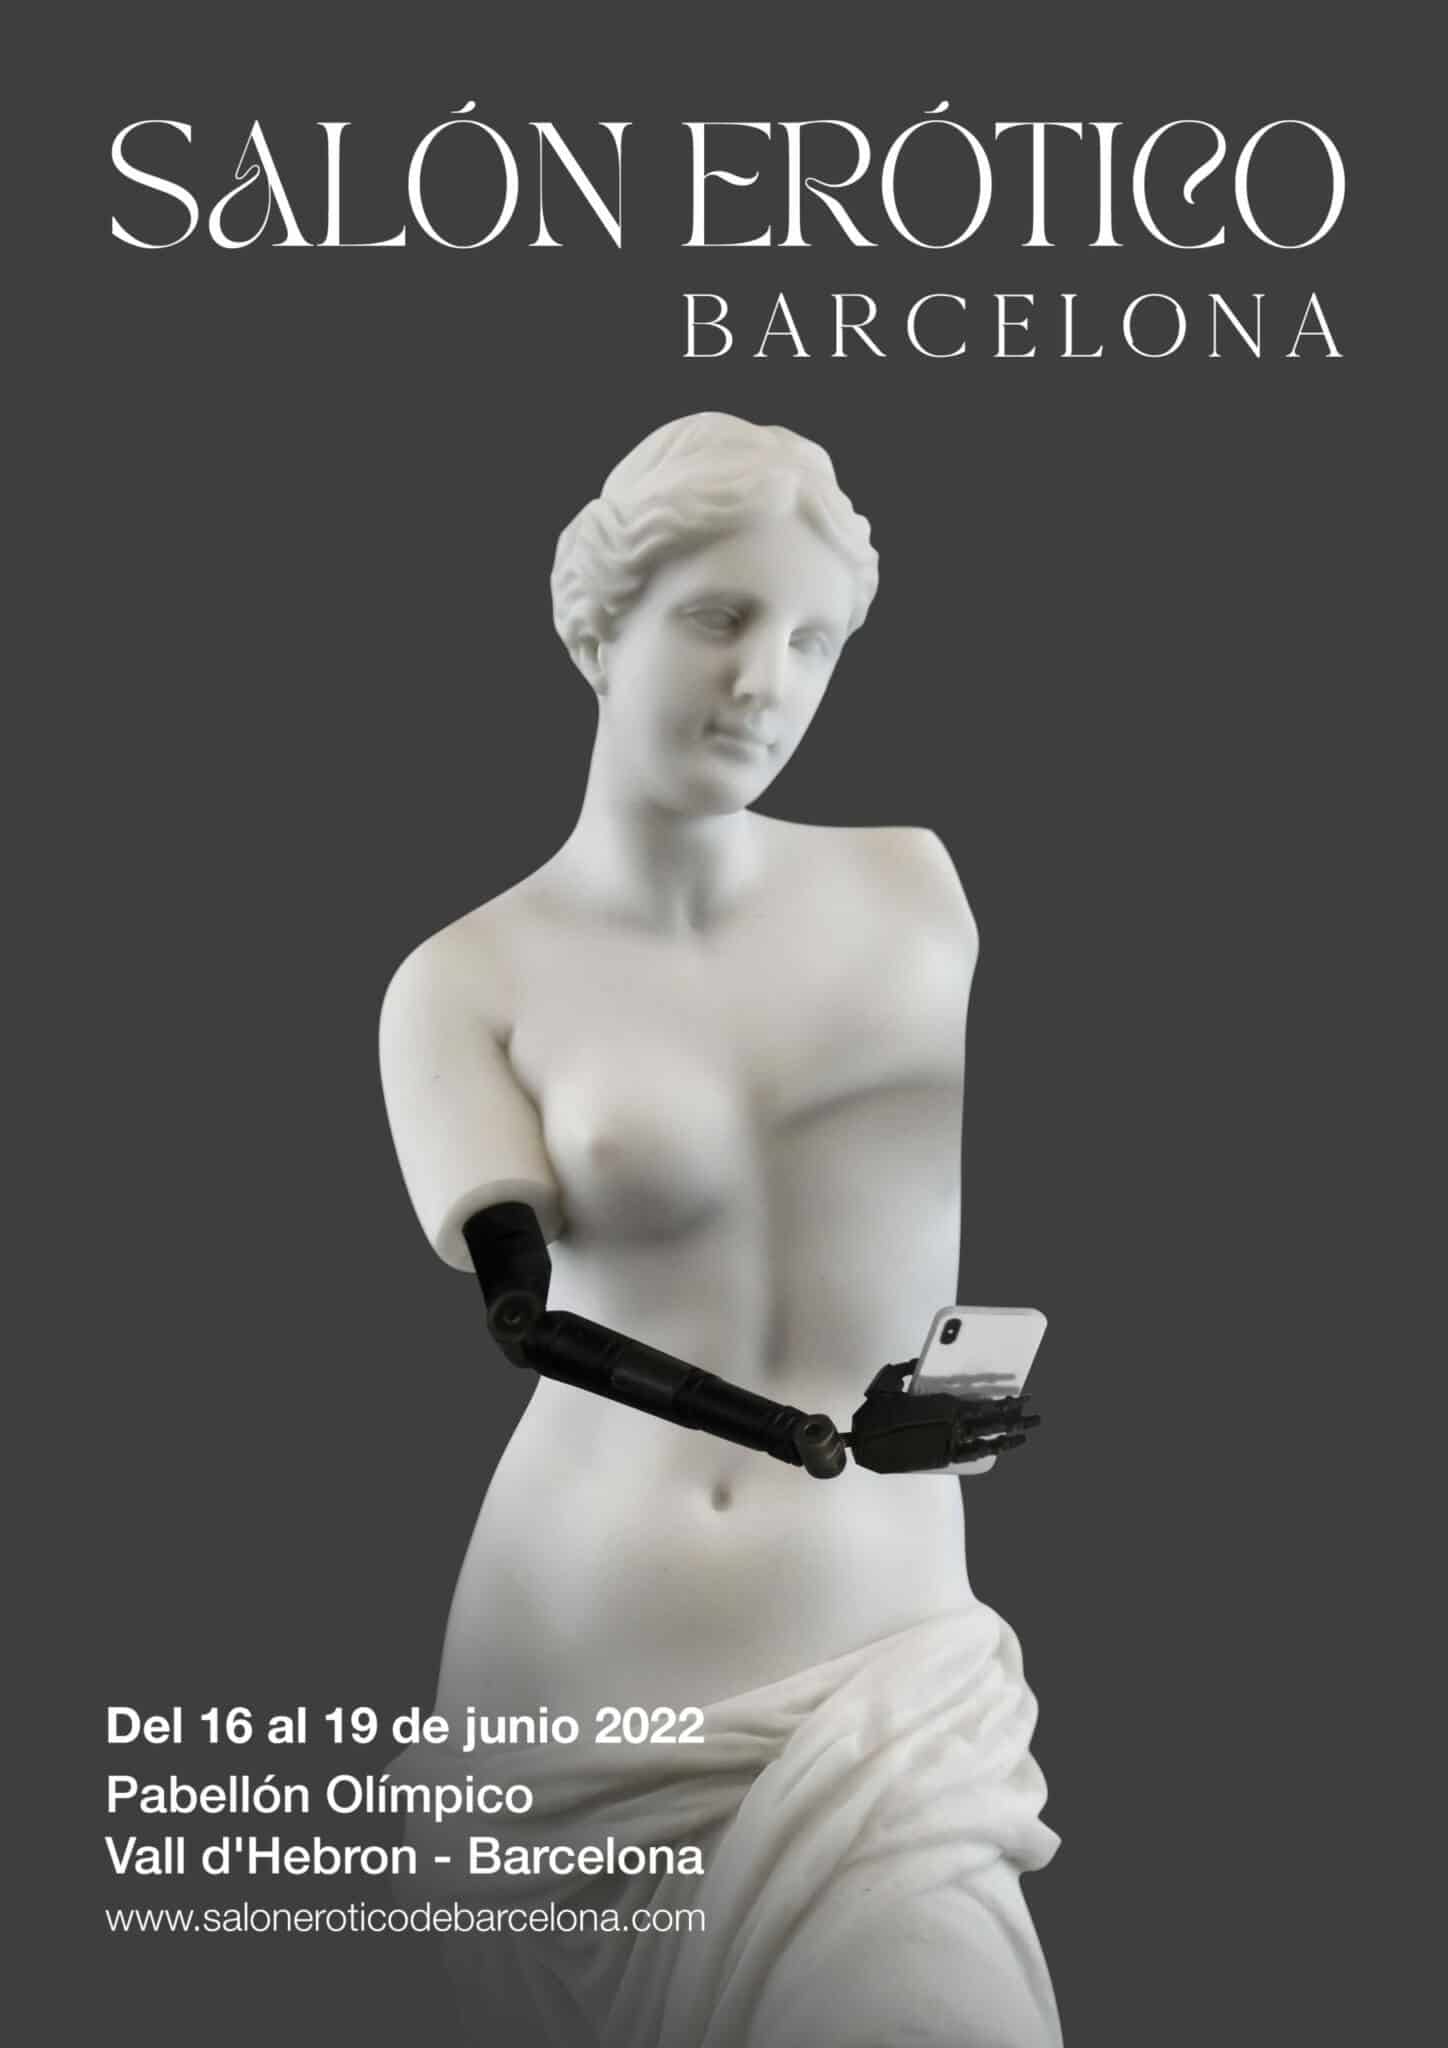 Cartel del Salón Erótico de Barcelona 2022: escultura femenina con mastectomía del pecho izquierdo y brazo robótico derecho sujetando un móvil.